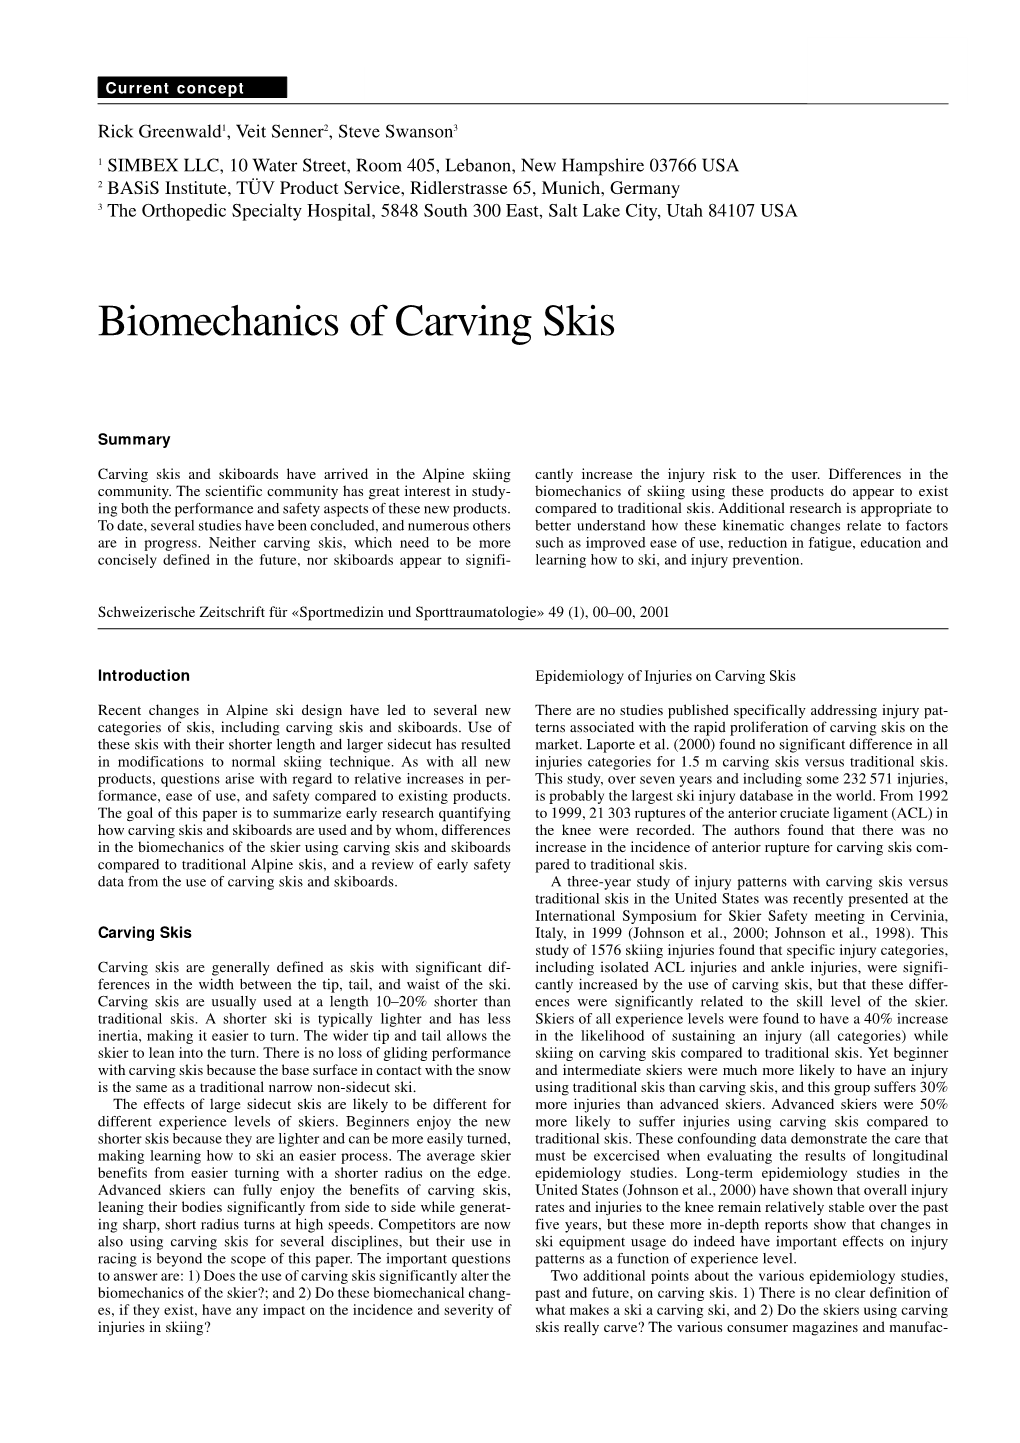 Biomechanics of Carving Skis